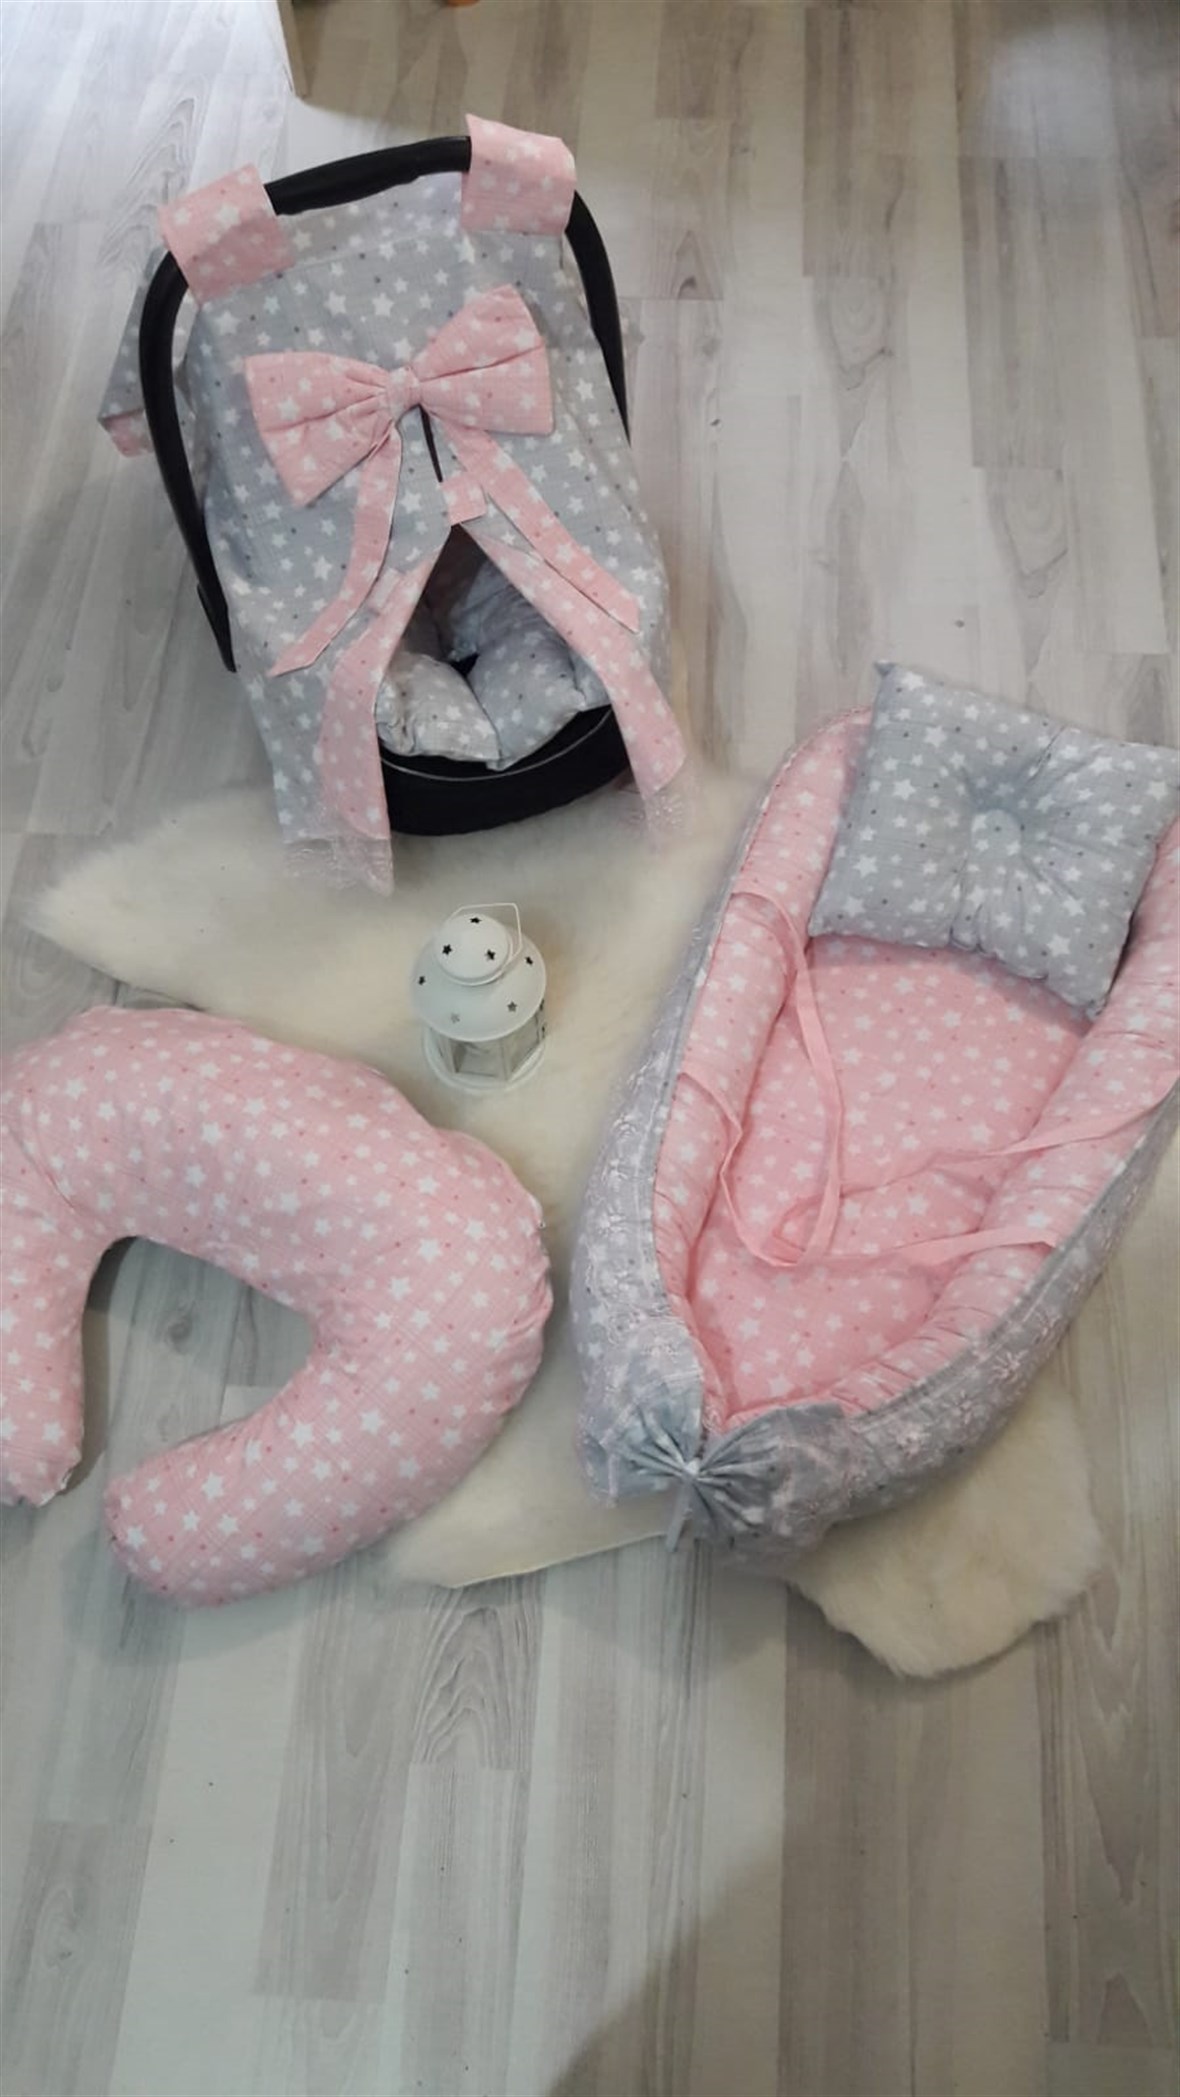 Bayev Yeni Doğan Bebe Seti - Baby Nest ve Puset Ürünleri full001